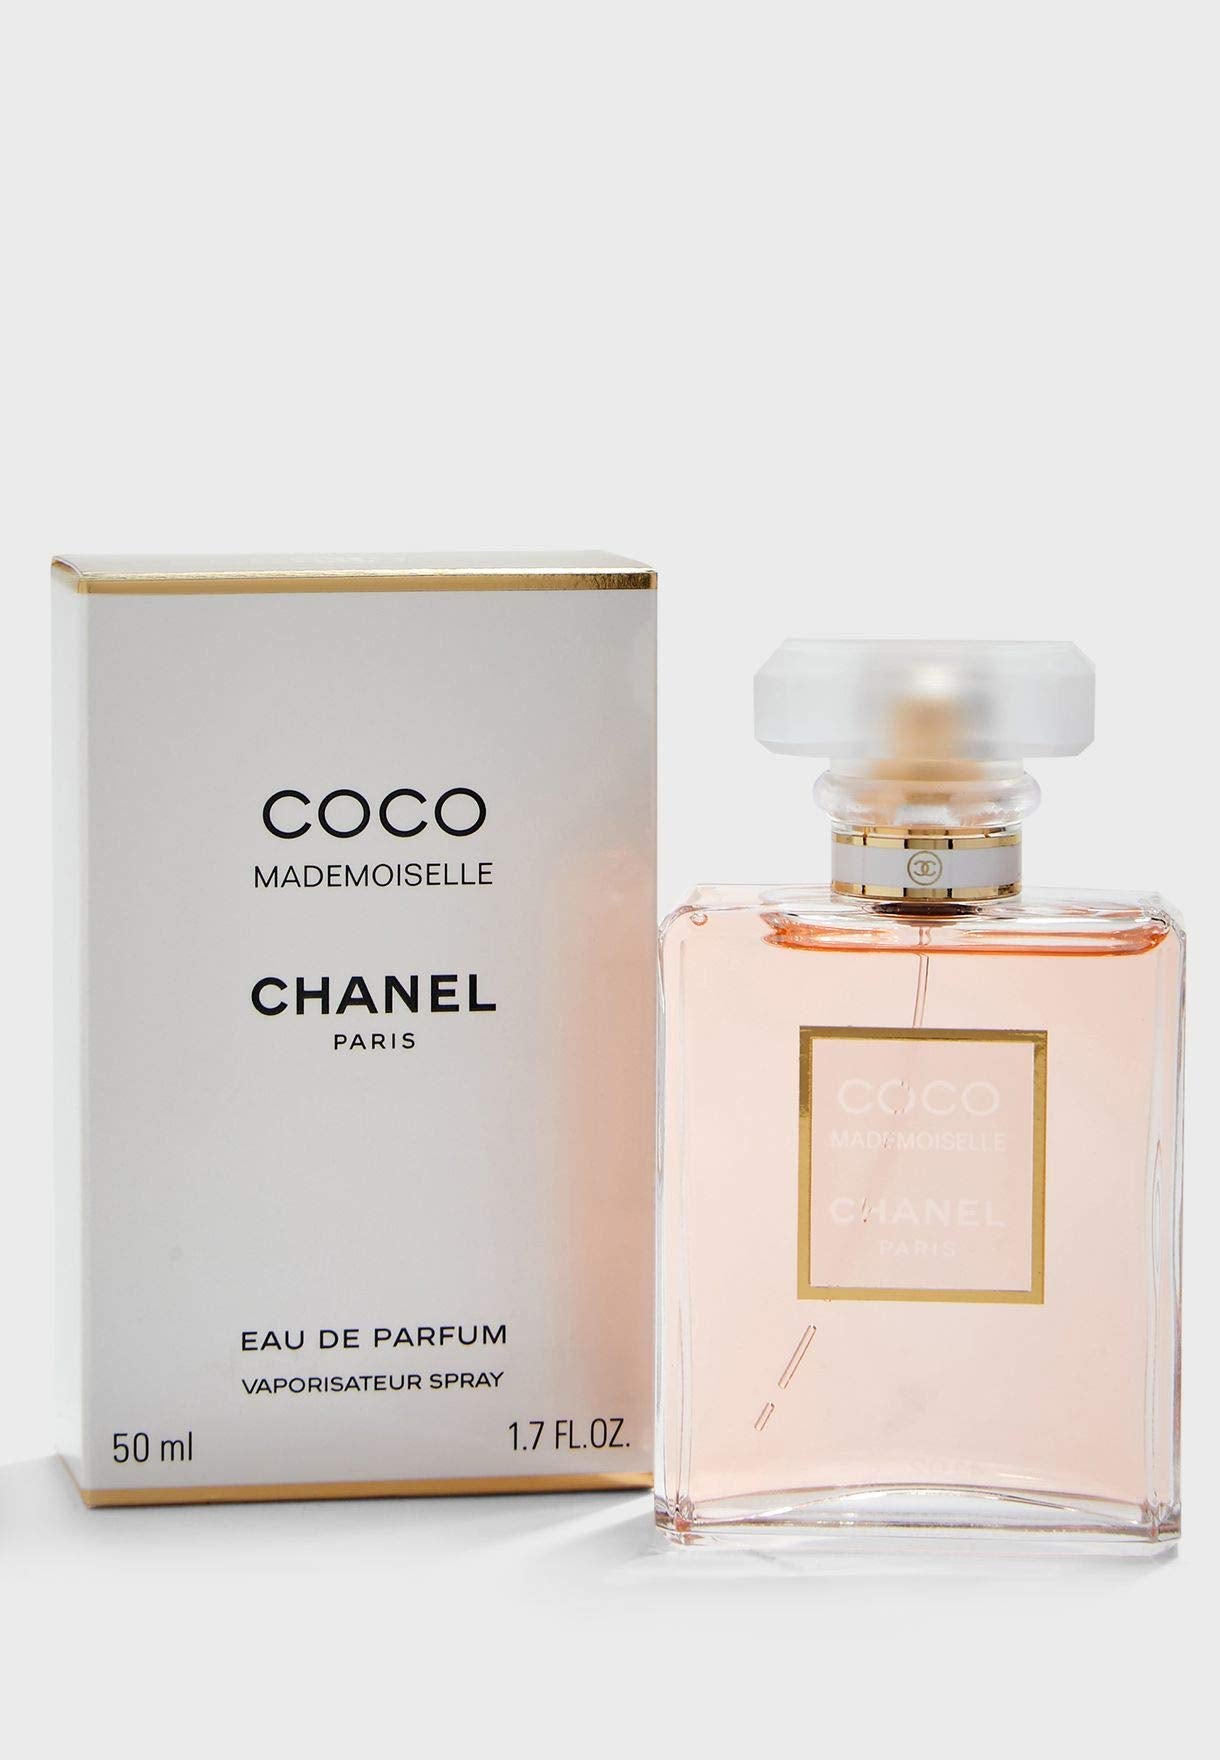 Chanel Coco Mademoiselle Eau de Parfum Spray for Women, 3.4 Fluid Ounce